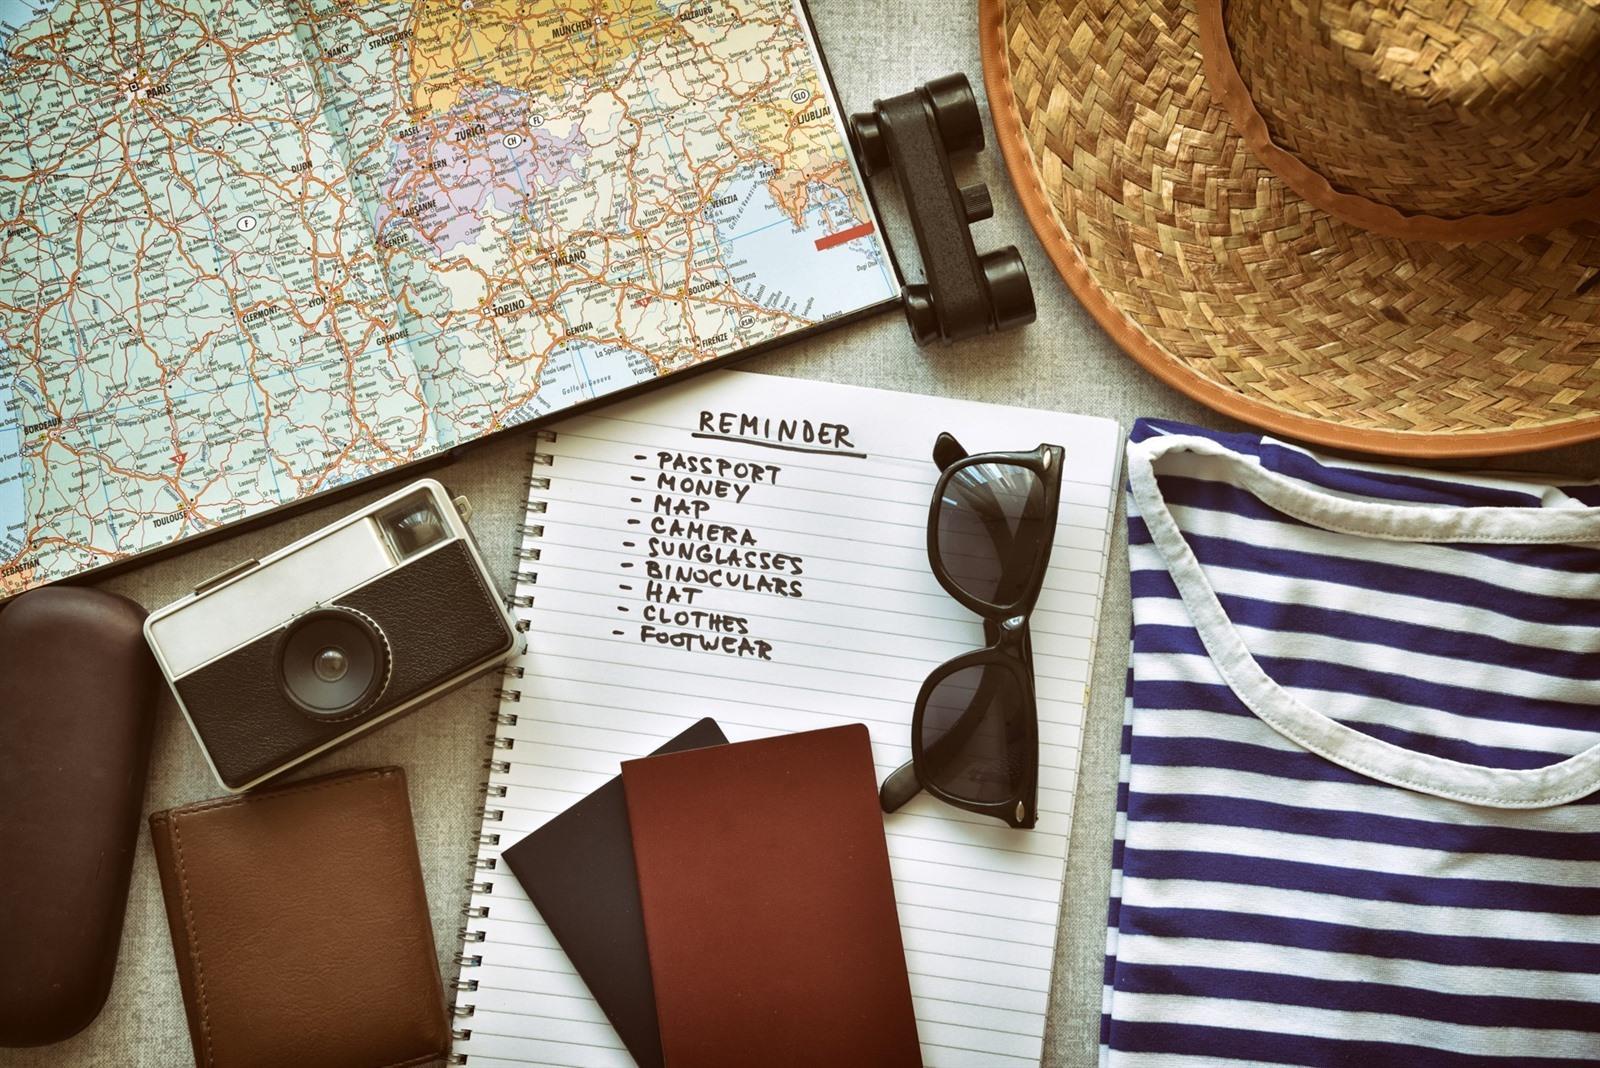 vakantie: Download deze complete reis checklist